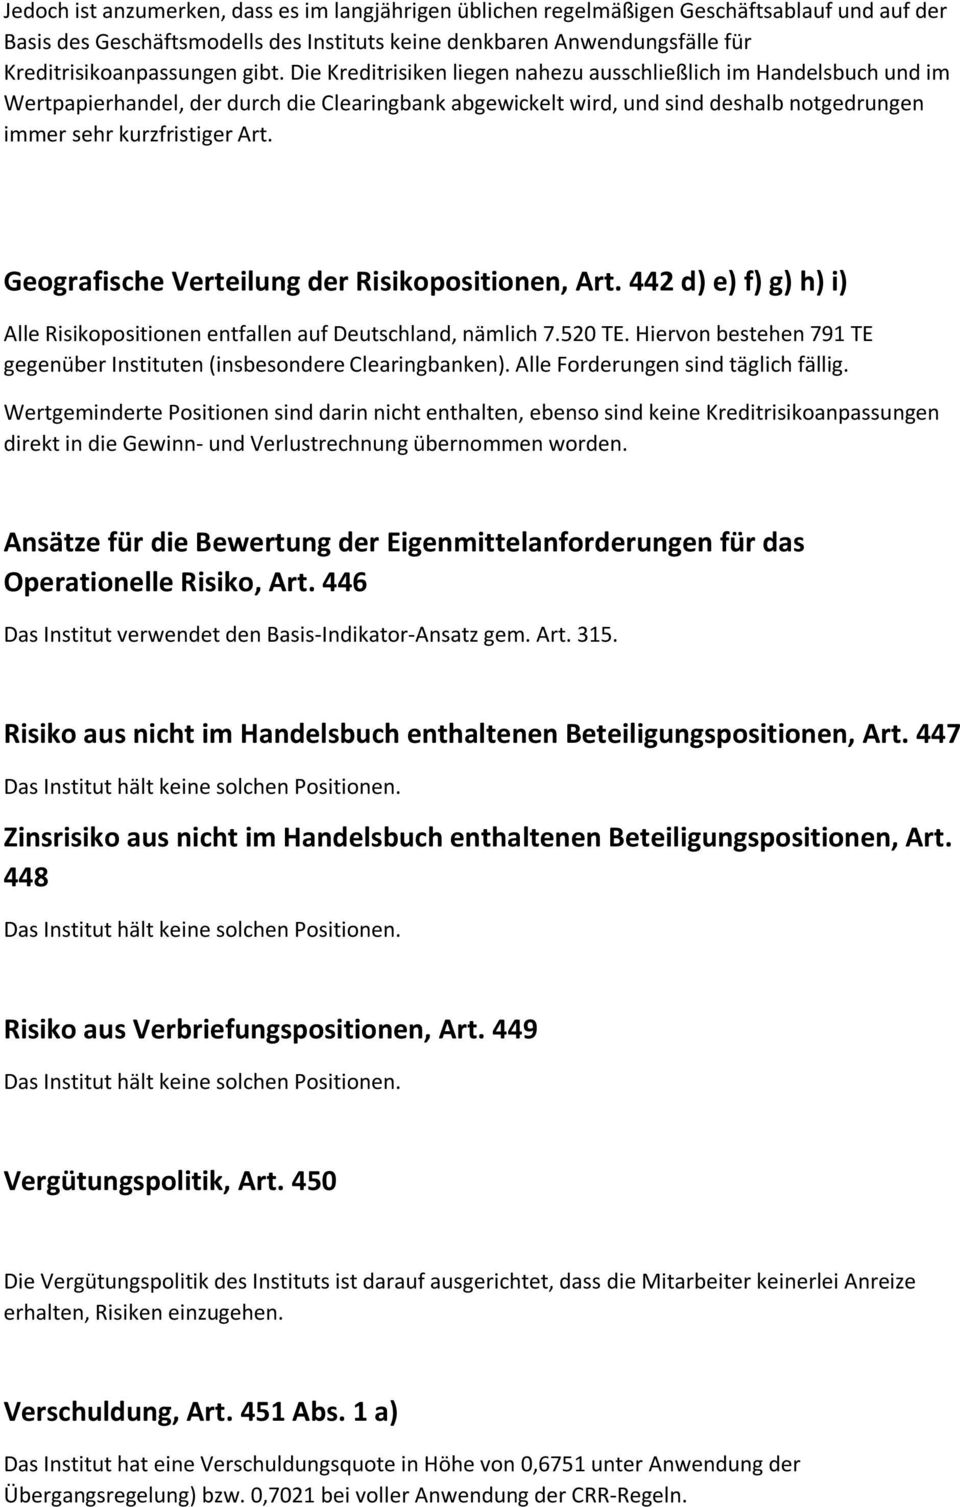 Geografische Verteilung der Risikopositionen, Art. 442 d) e) f) g) h) i) Alle Risikopositionen entfallen auf Deutschland, nämlich 7.520 TE.